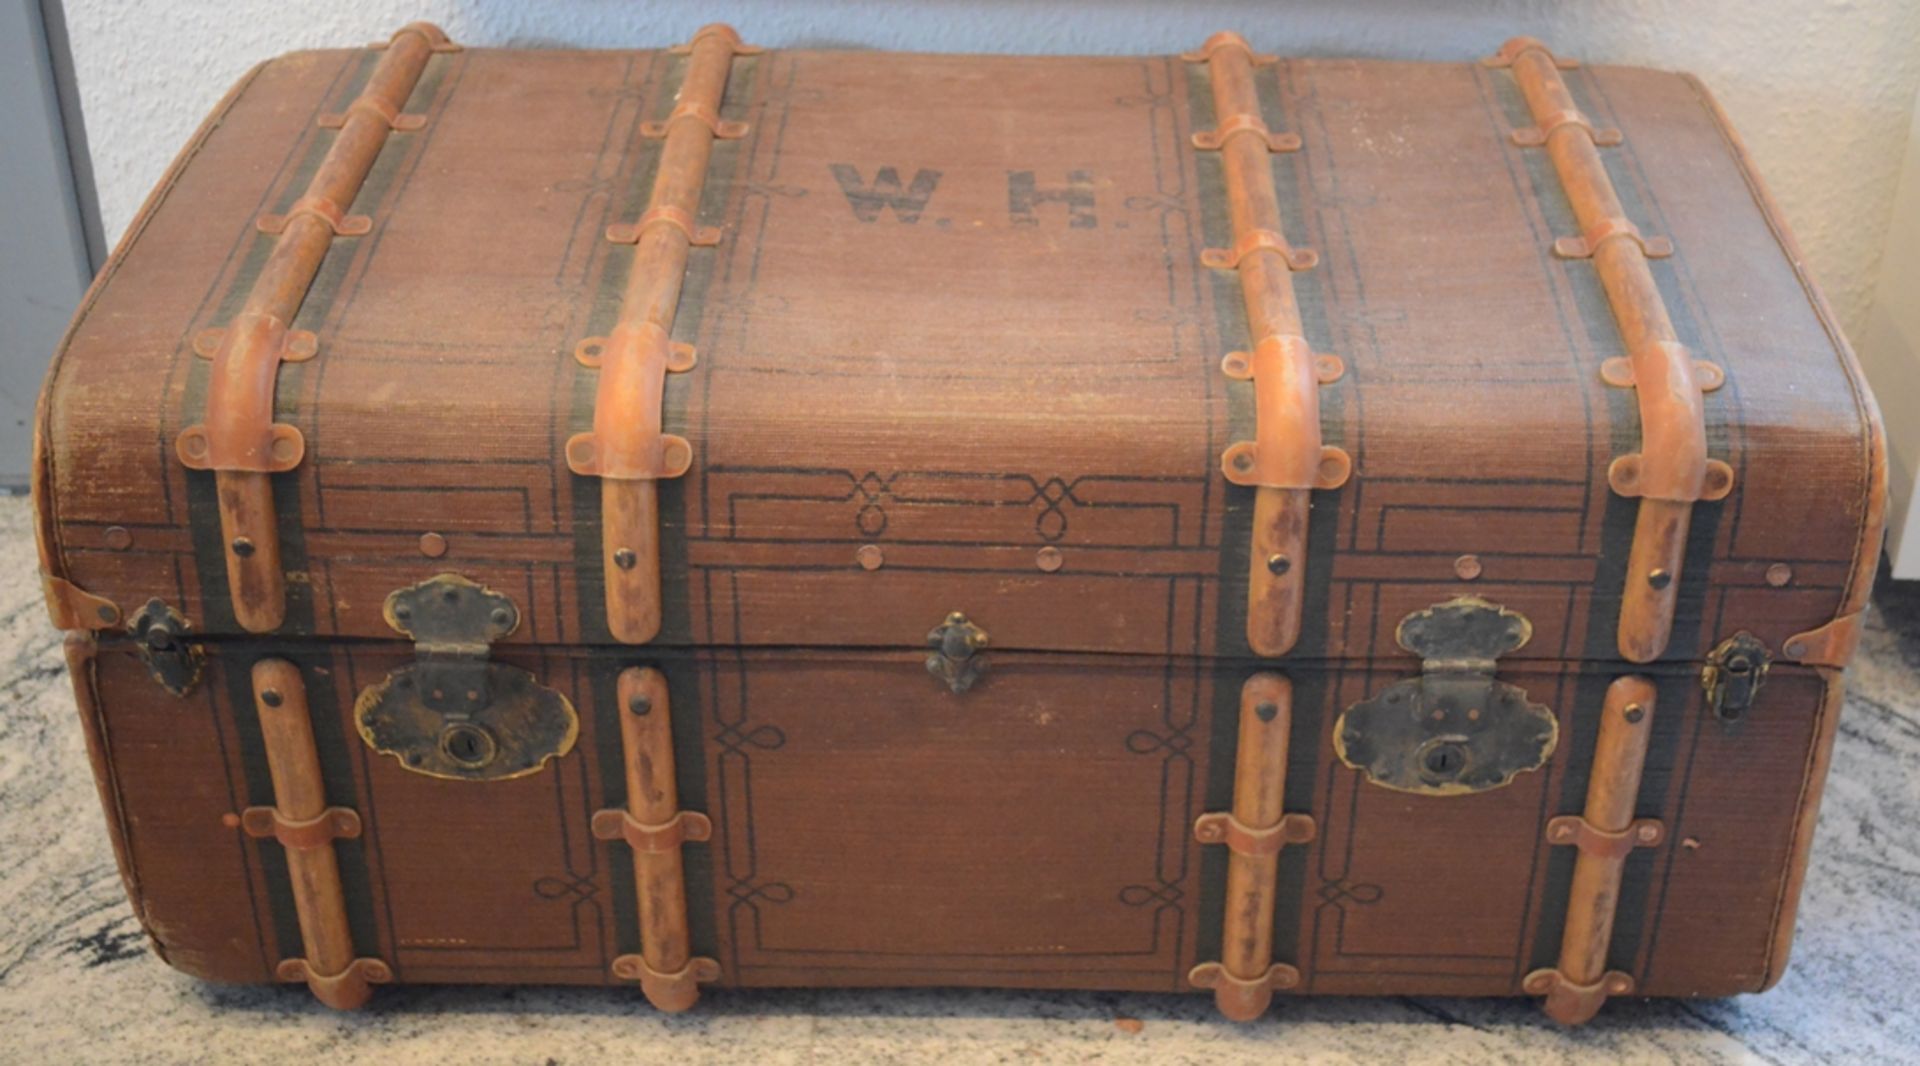 Reisekoffer, Rohr-Flachs-Platten-Koffer, rechteckiger Korpus mit Bugholzstreben, beidseitige